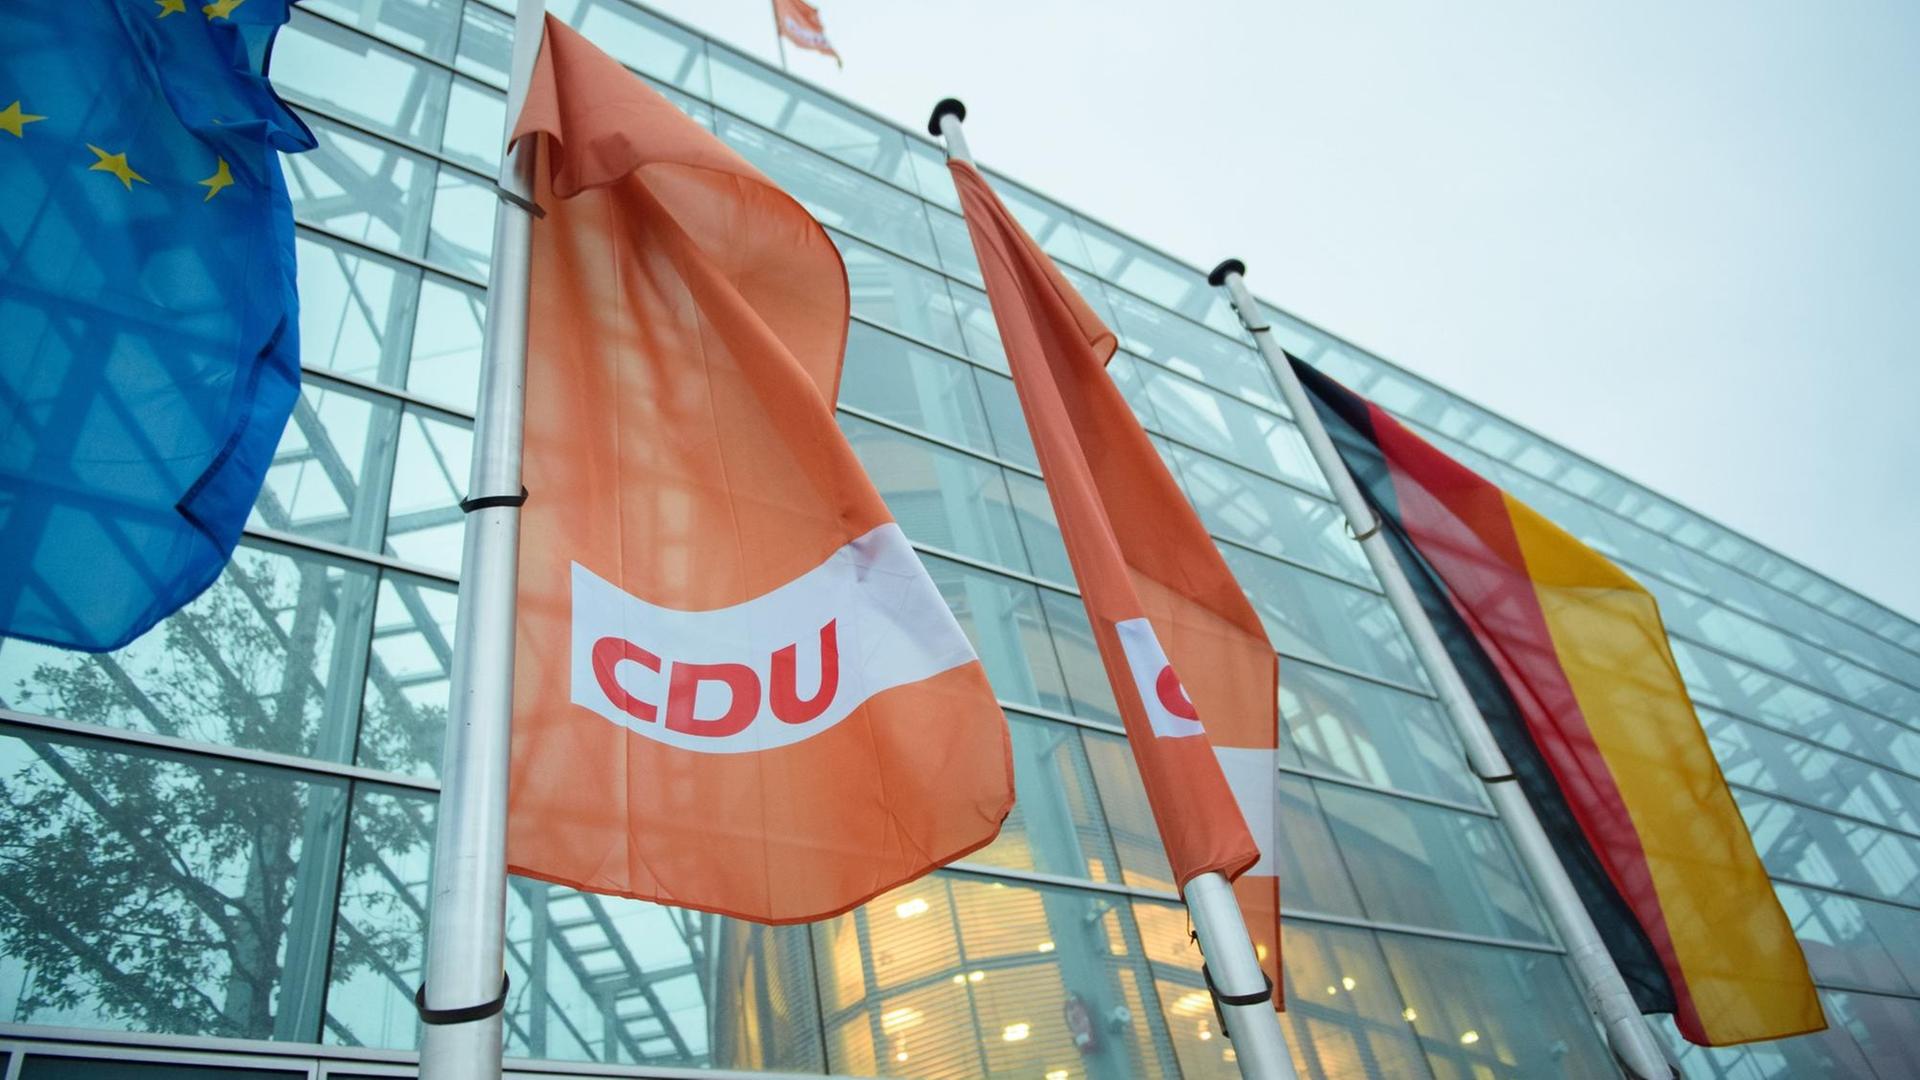 10.02.2019, Berlin: Orangene Flaggen mit der Aufschrift "CDU" wehen vor dem Konrad-Adenauer-Haus, der Parteizentrale der CDU.